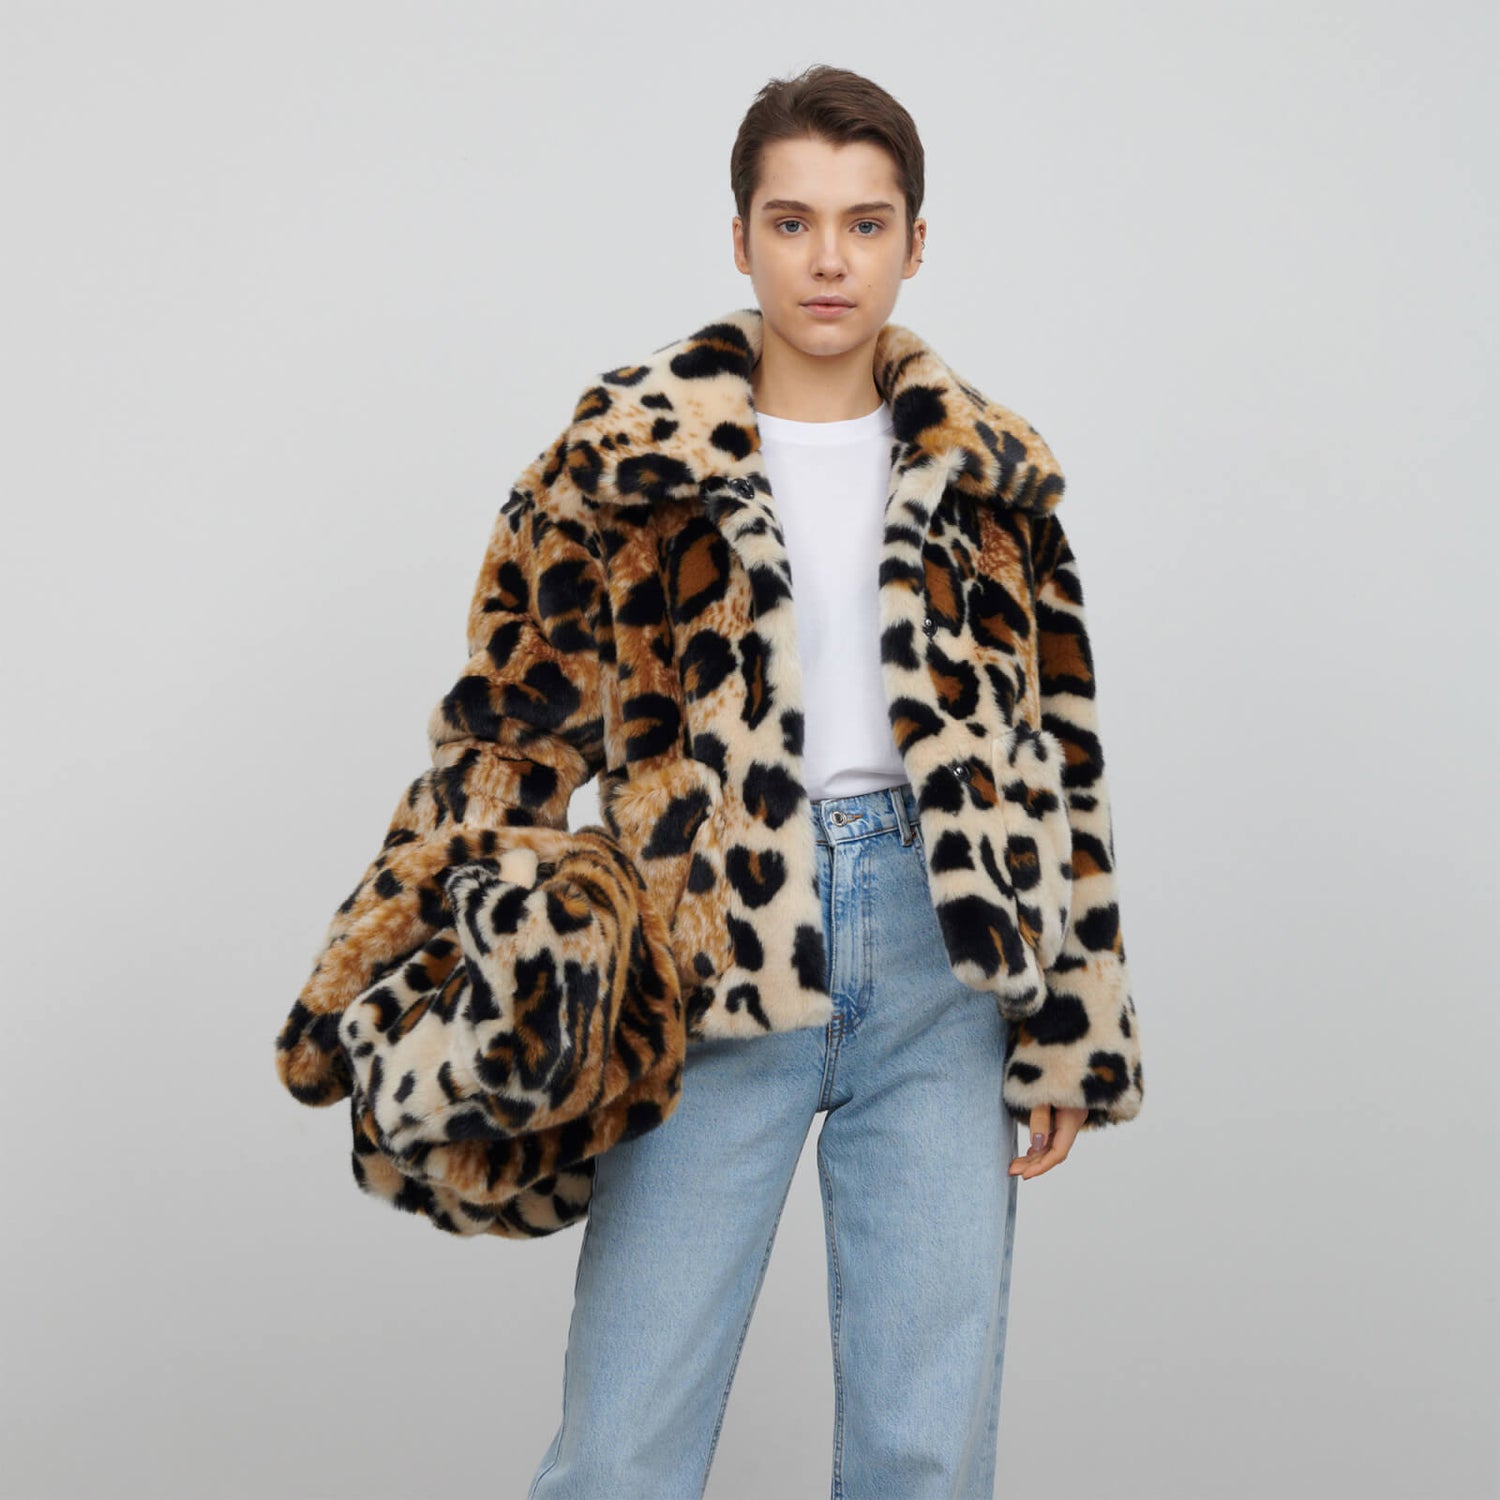 Jakke Traci Leopard-Print Faux Fur Coat - XS